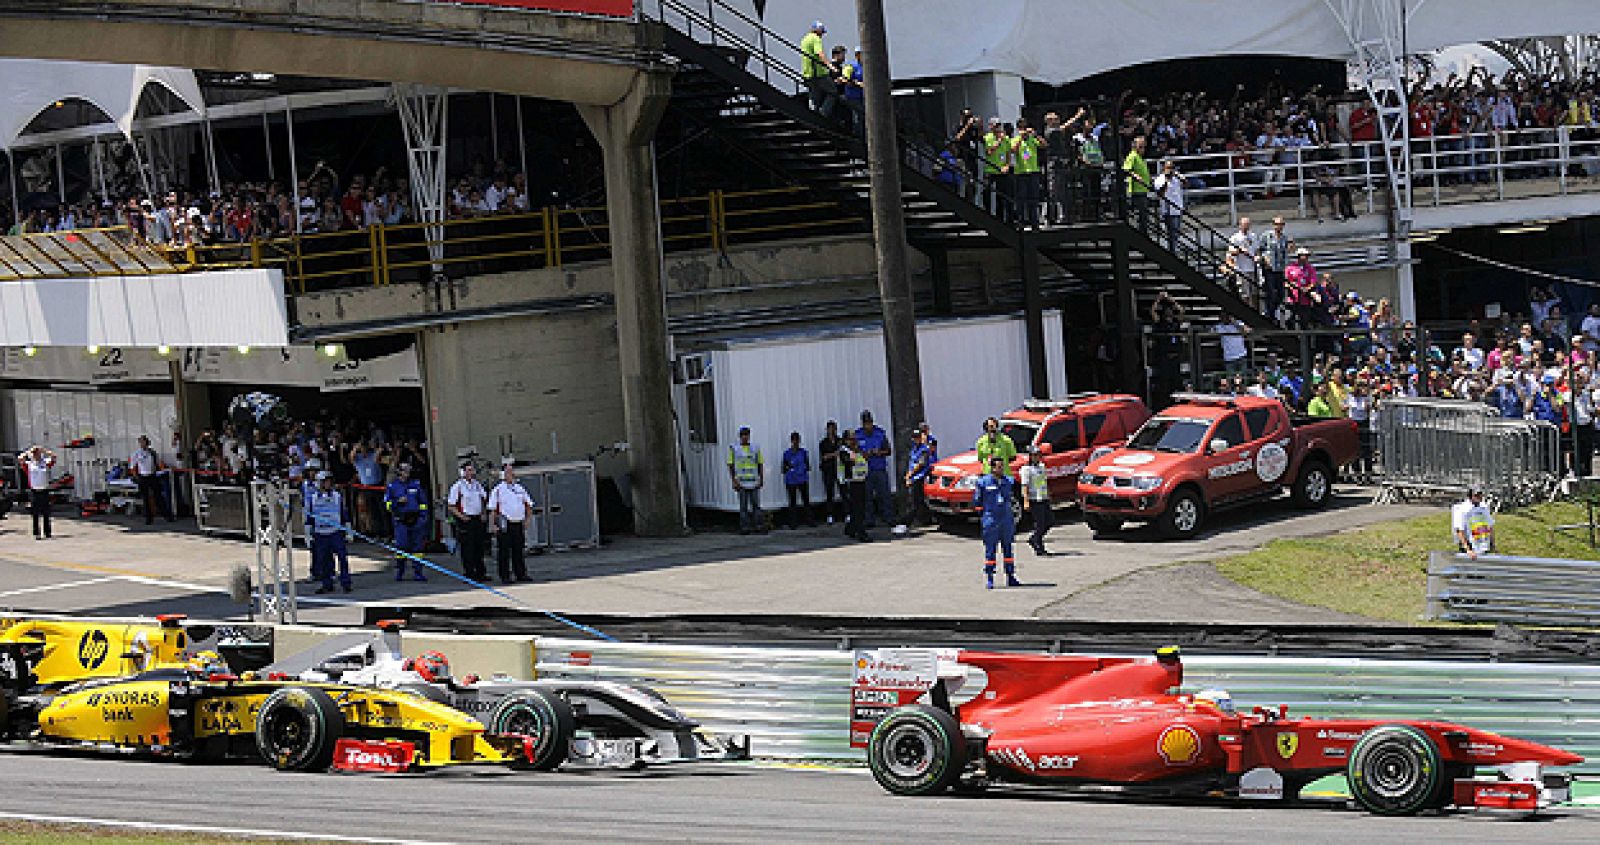 El piloto español Fernando Alonso, de la escudería Ferrari, supera a varios rivales durante el Gran Premio de Brasil de Fórmula Uno en el circuito de Interlagos.